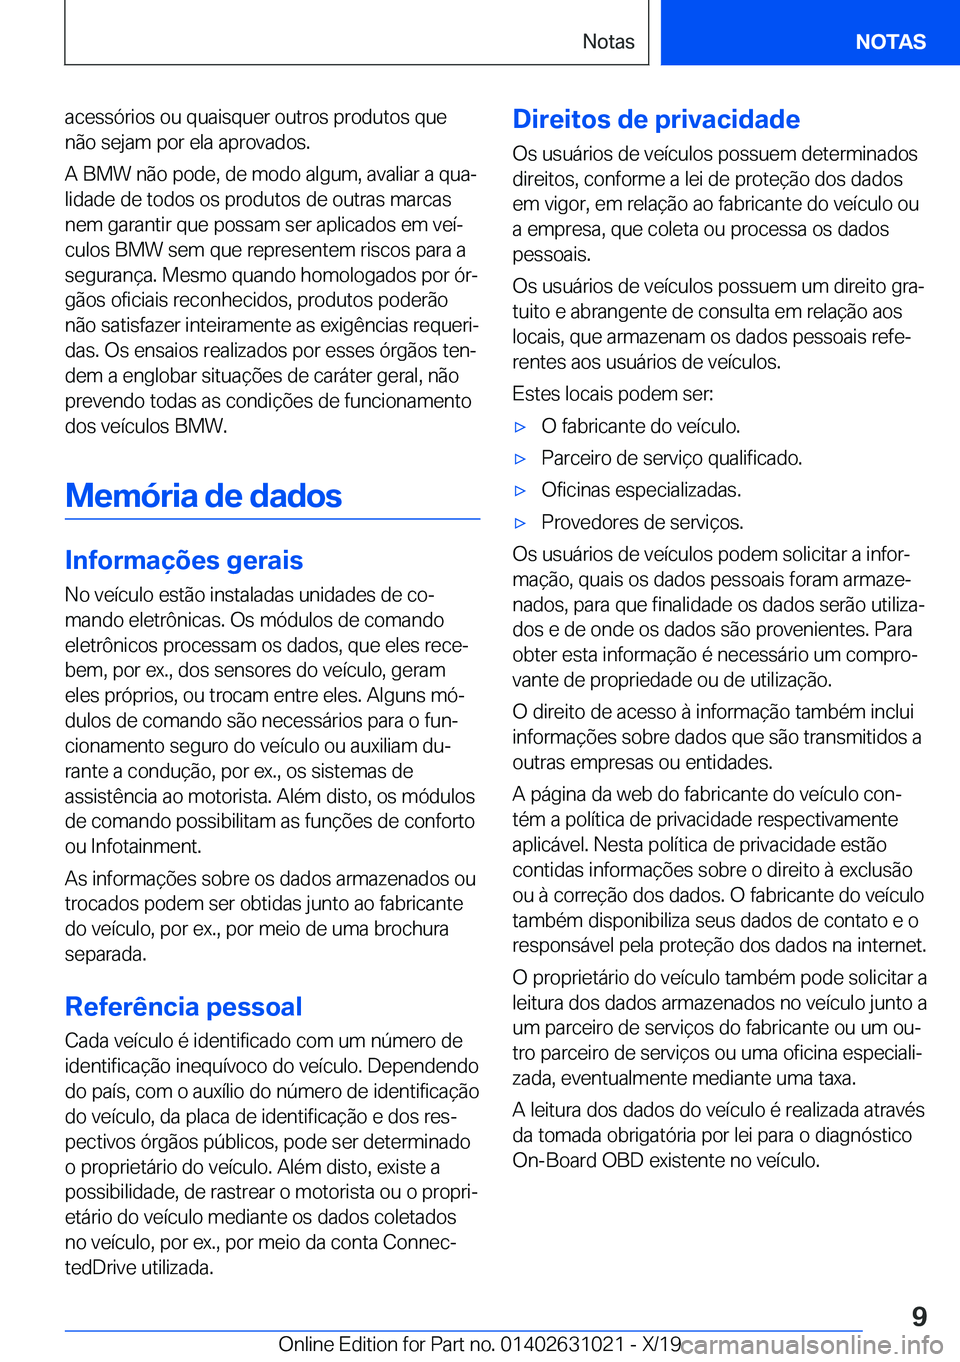 BMW 2 SERIES GRAN COUPE 2020  Manual do condutor (in Portuguese) �a�c�e�s�s�ó�r�i�o�s��o�u��q�u�a�i�s�q�u�e�r��o�u�t�r�o�s��p�r�o�d�u�t�o�s��q�u�e
�n�ã�o��s�e�j�a�m��p�o�r��e�l�a��a�p�r�o�v�a�d�o�s�.
�A��B�M�W��n�ã�o��p�o�d�e�,��d�e��m�o�d�o��a�l�